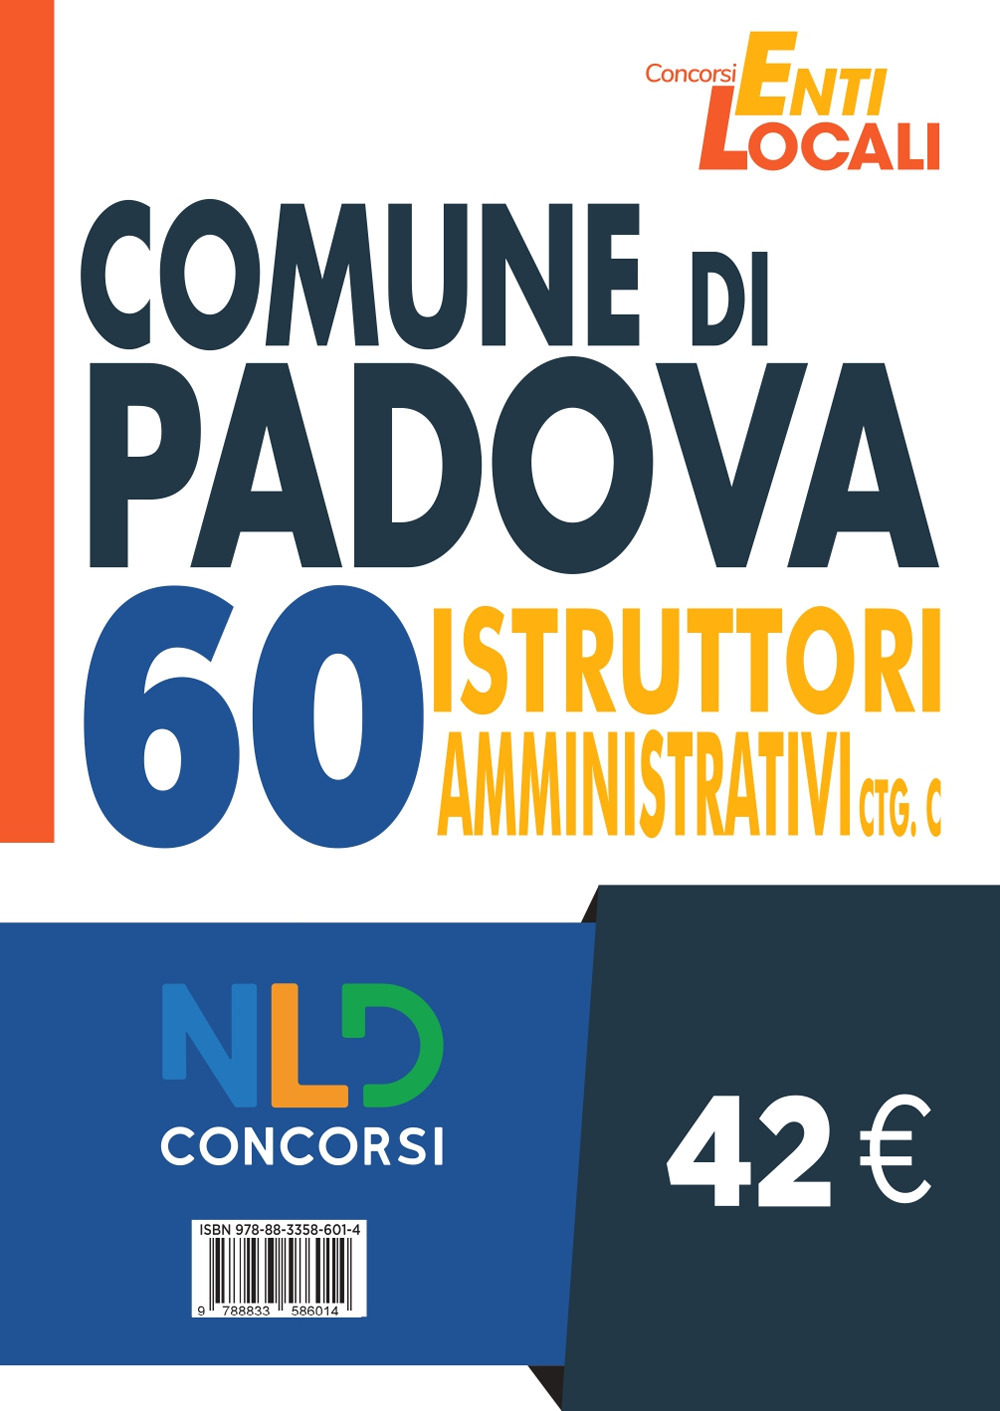 Concorso Comune di Padova. Concorso per 60 Istruttori amministrativi Ctg C